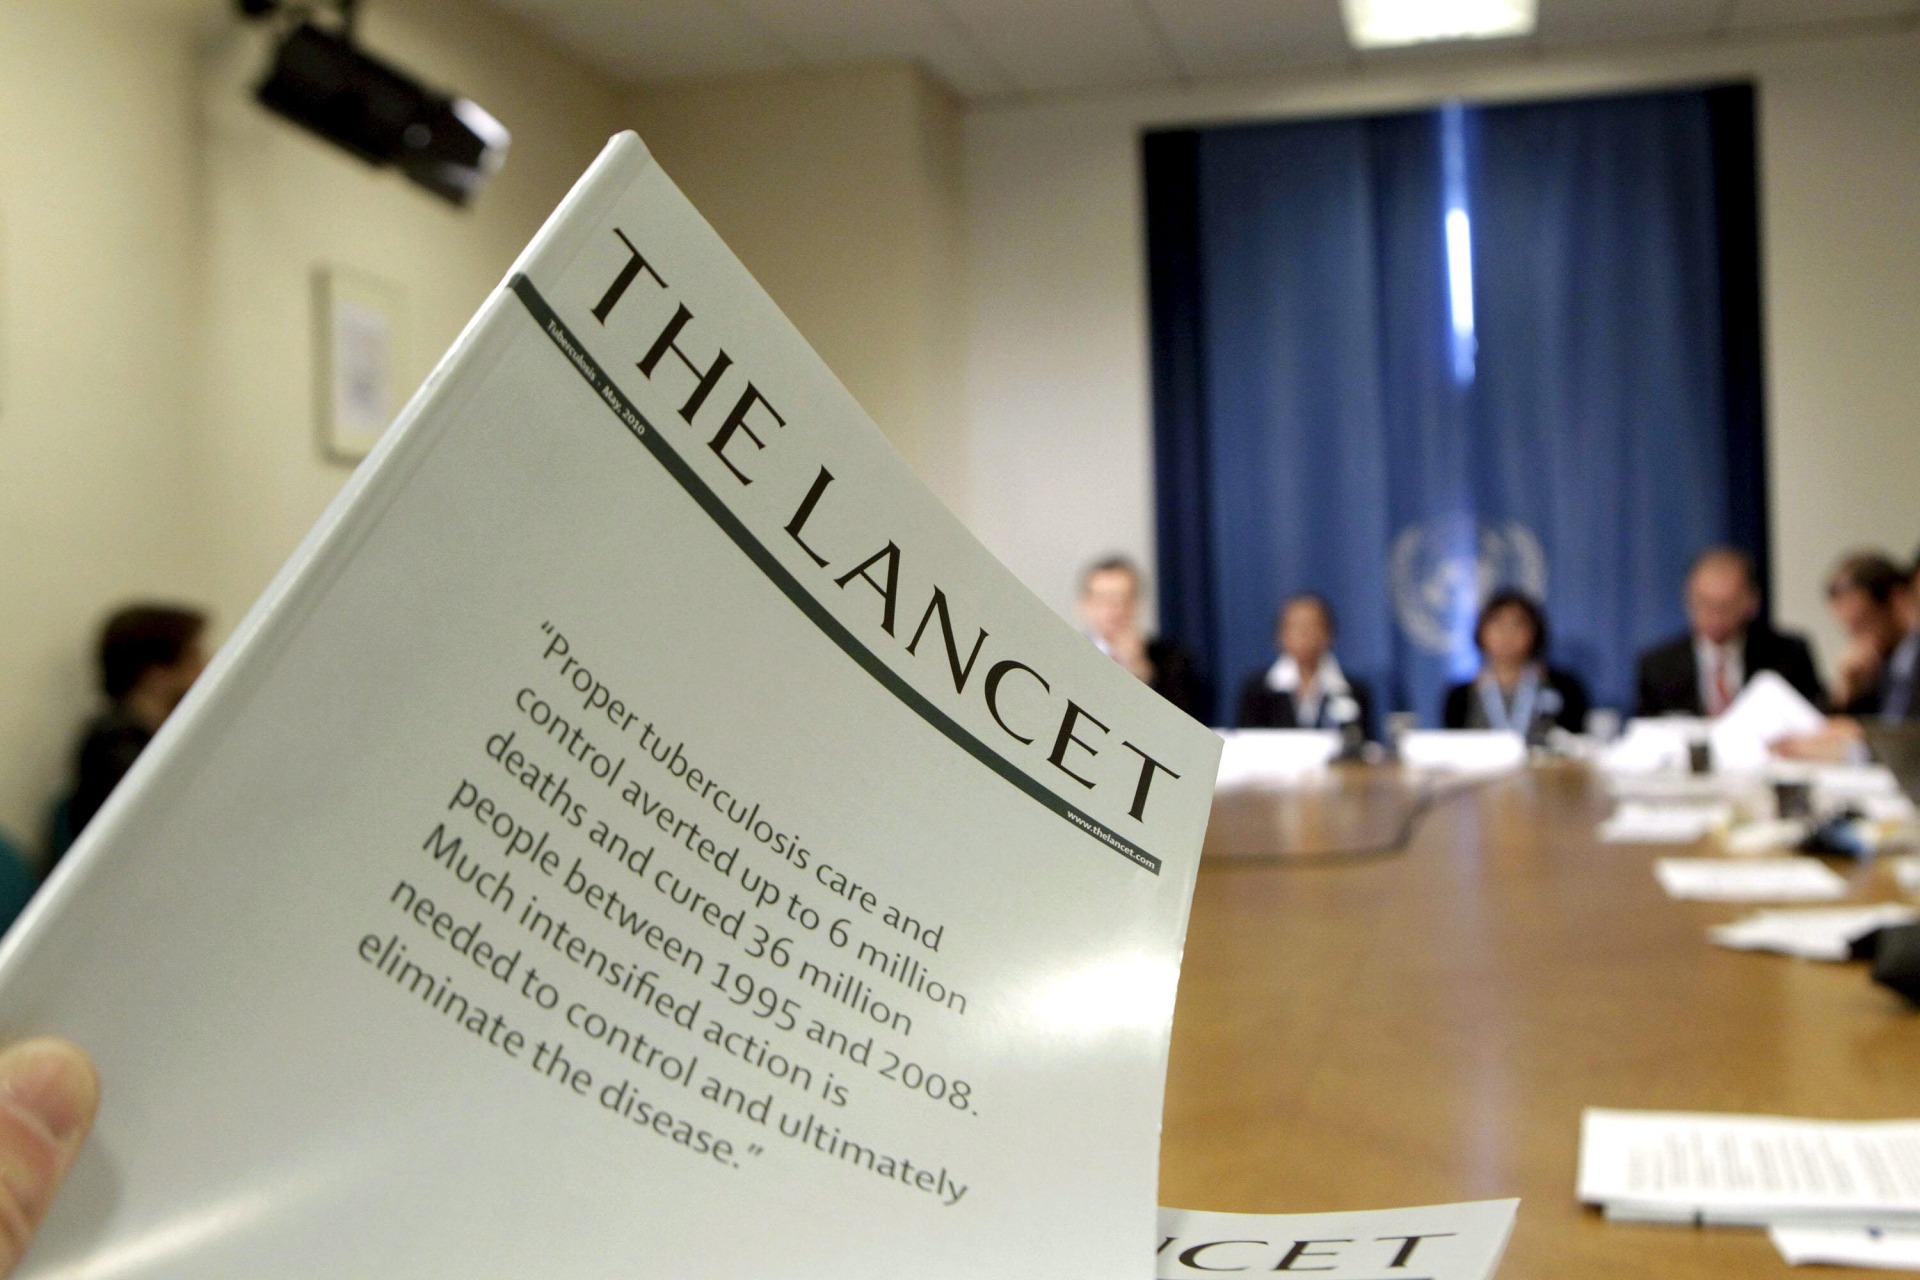 Un periodista sostiene un ejemplar de la revista médica The Lancet durante una asamblea de la Organización Mundial de la Salud (OMS) en Ginebra. EFE/Salvatore di Nolfi